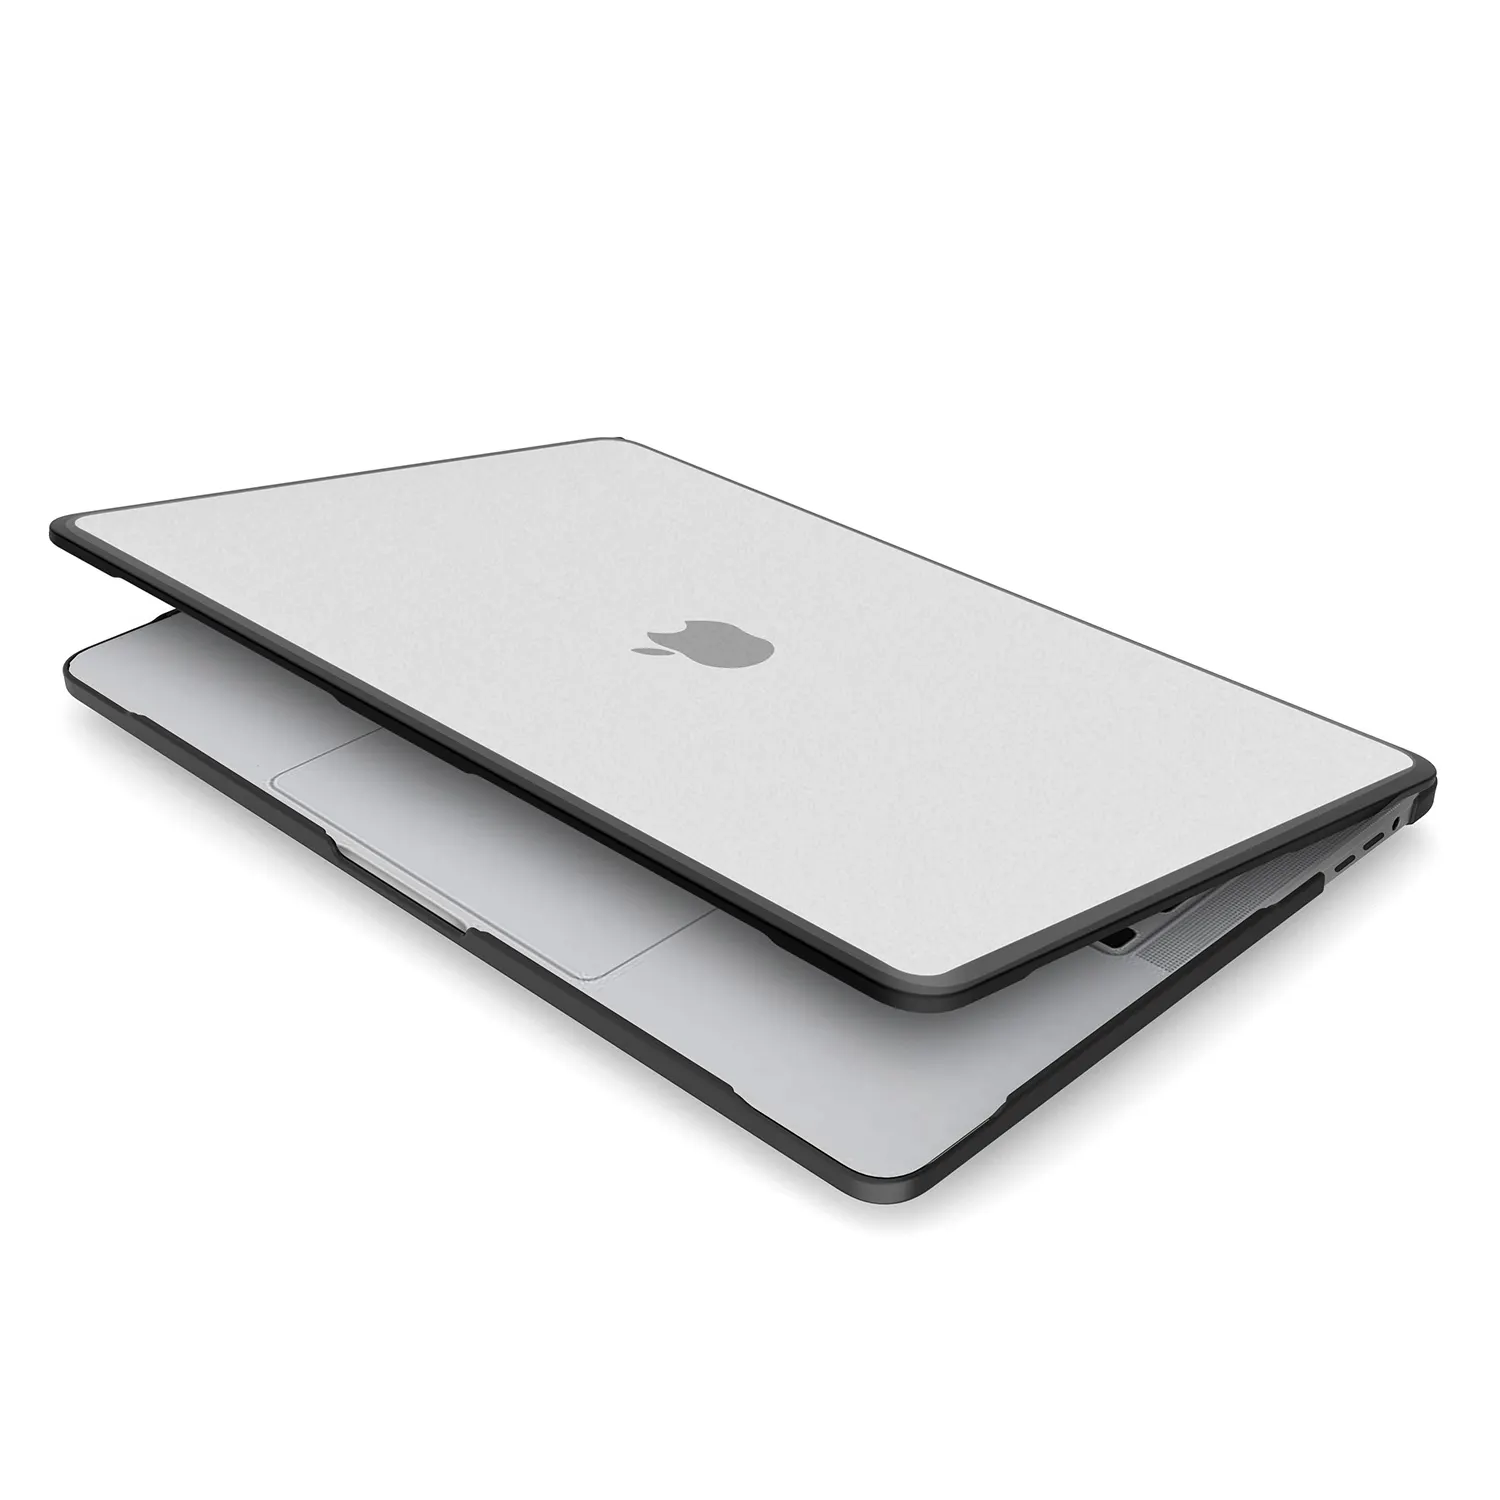 Proteção completa transparente para laptop de 13 polegadas, mais nova capa fosca para macbook, incluindo embalagem de varejo